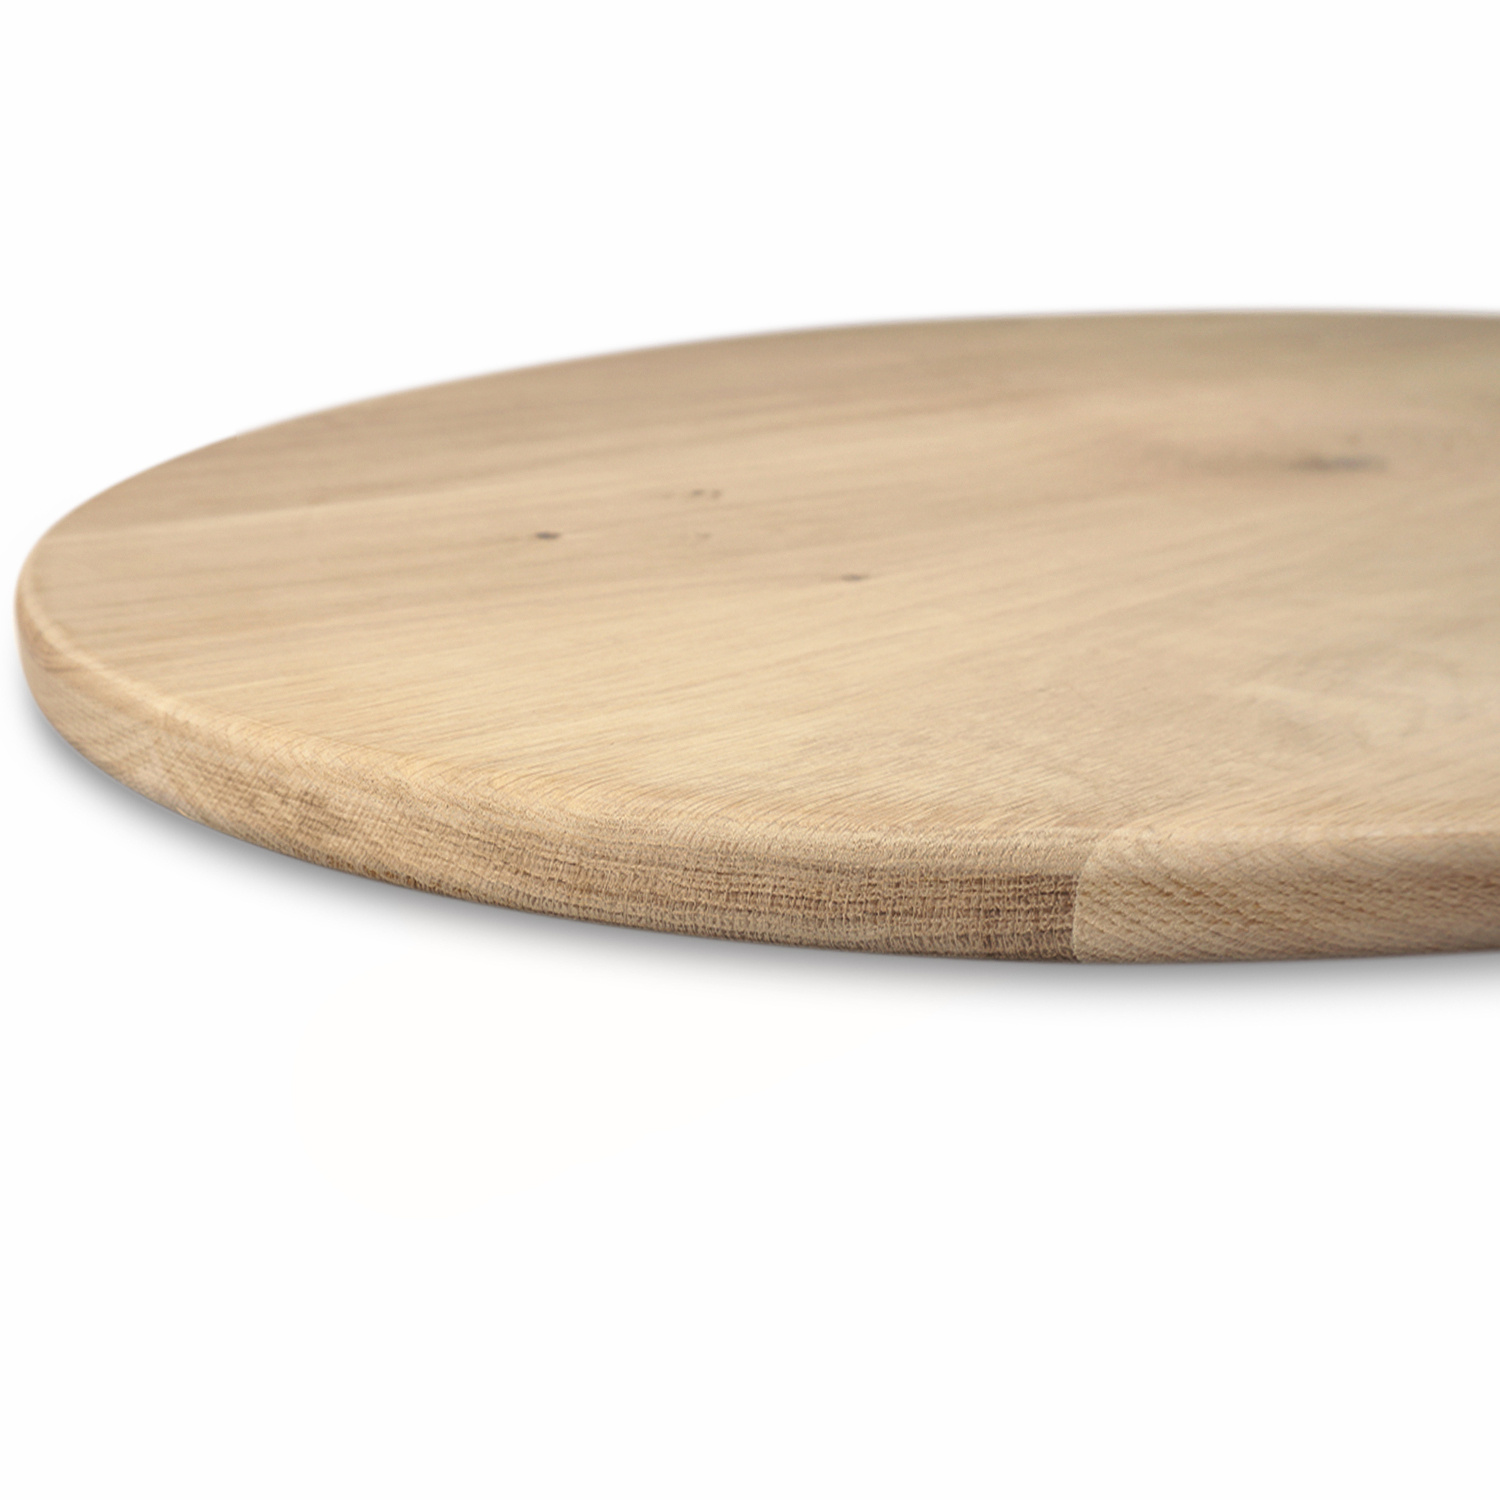  Rond eiken tafelblad op maat - 2,5 cm dik (1-laag) - extra rustiek Europees eikenhout - met extra brede lamellen (circa 14-20 cm)nhout - verlijmd kd 8-12% - diameter van 40 tot 117 cm